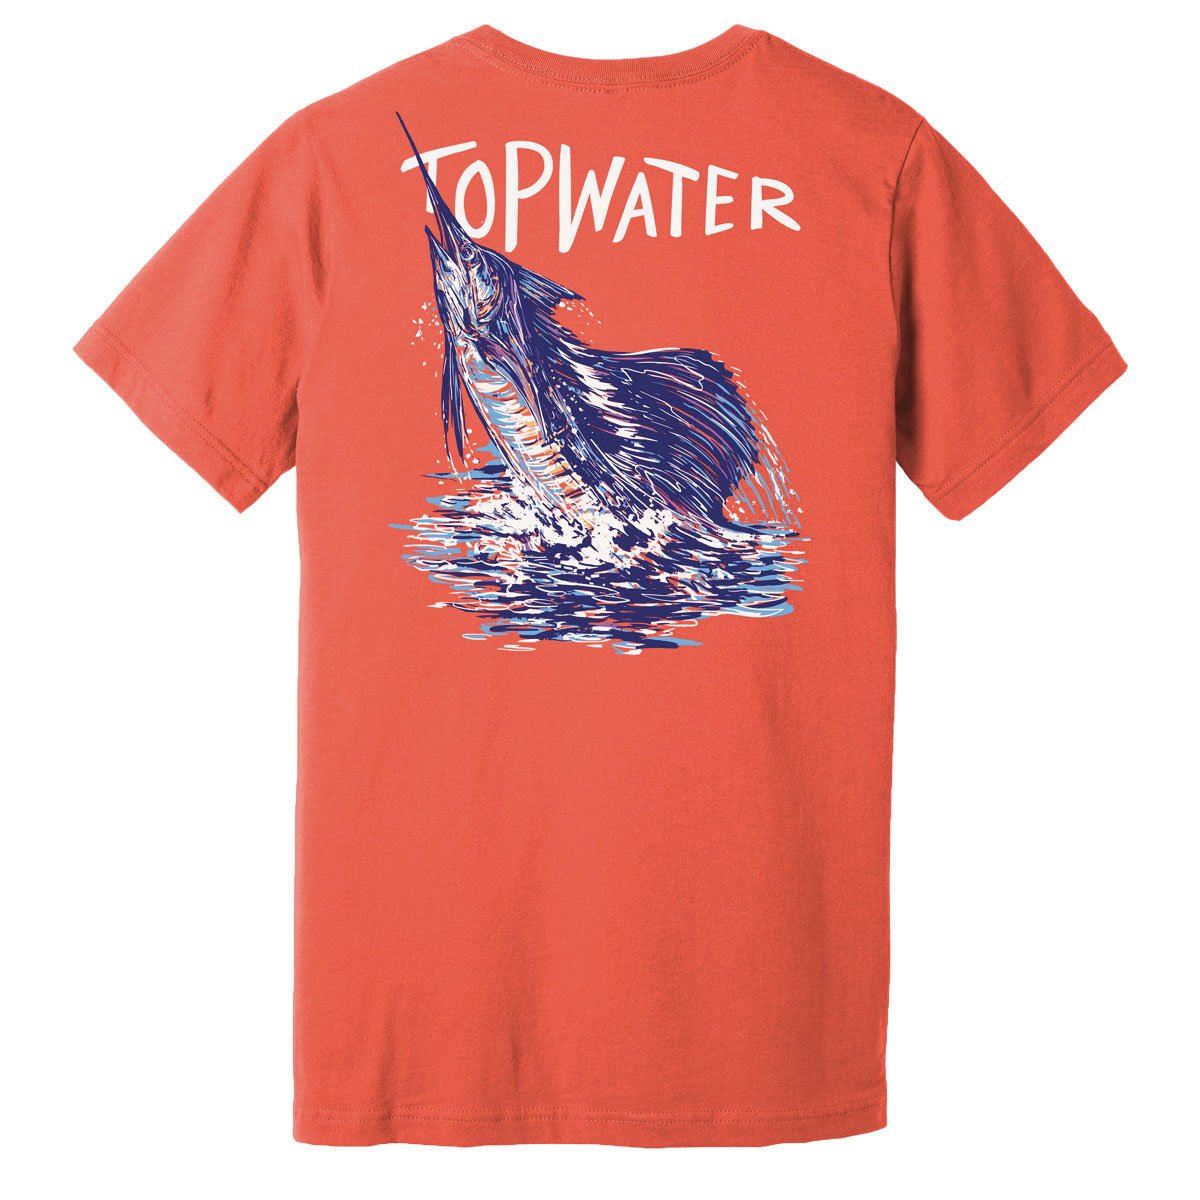 Sailfish Jumping - Short Sleeve T-Shirt by Topwater